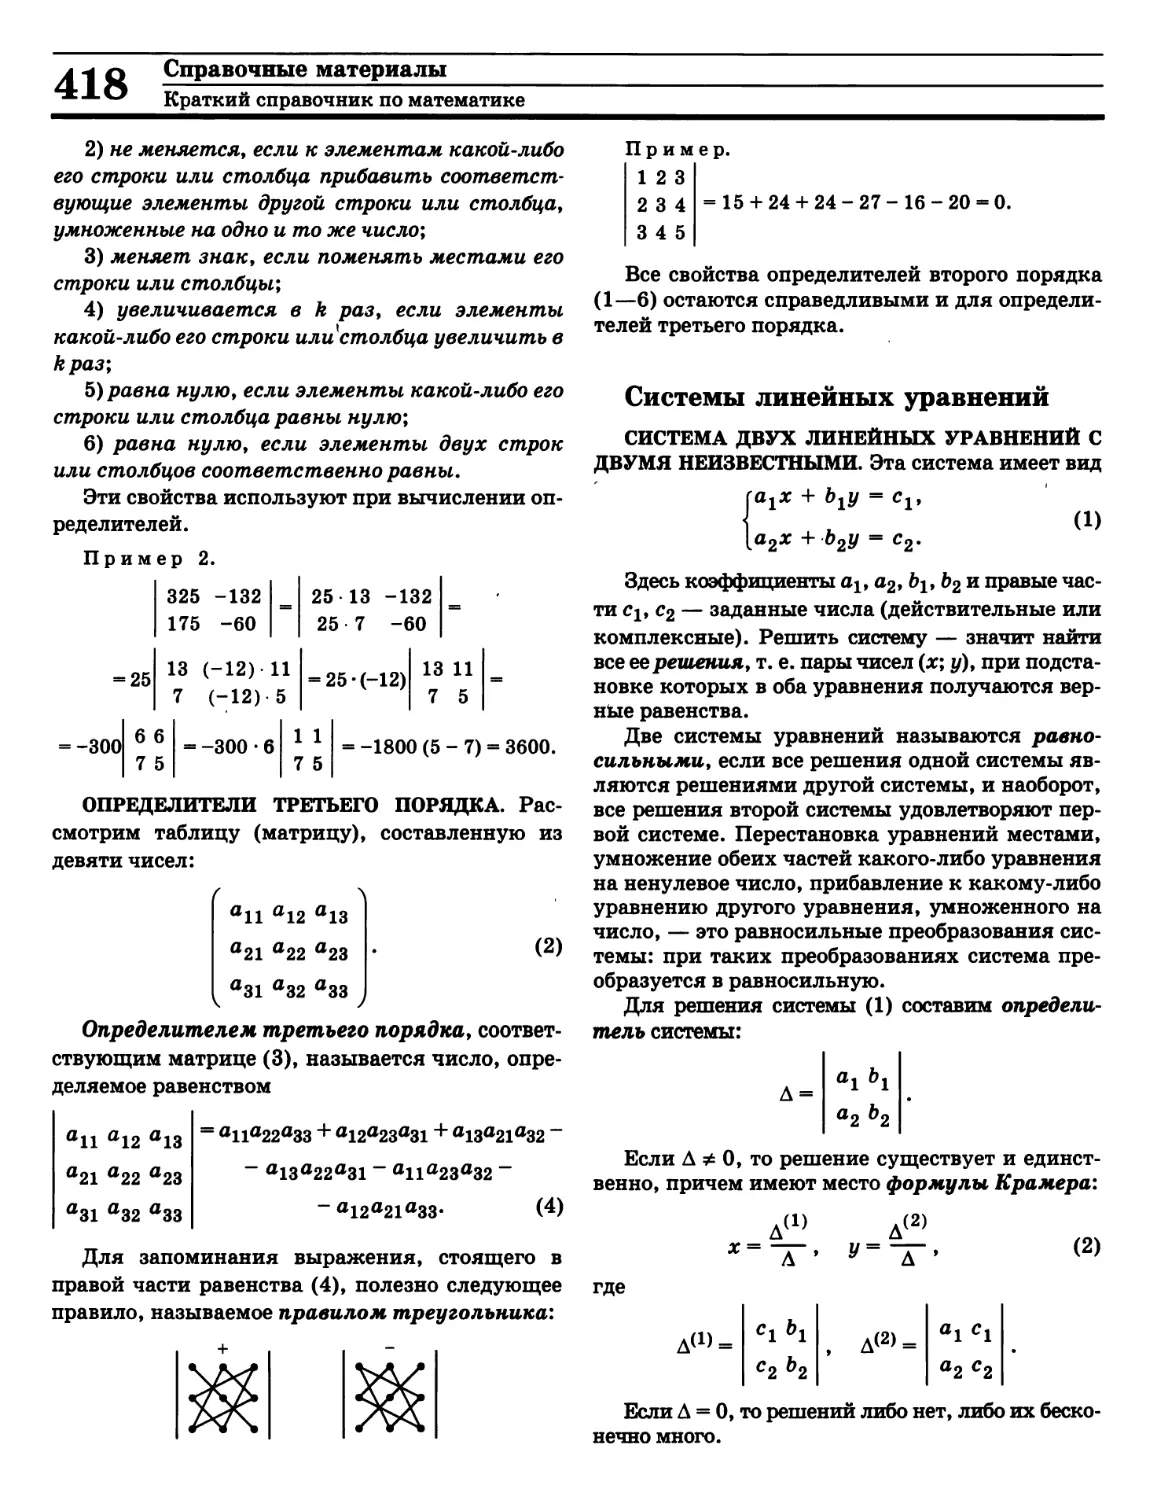 Определитель системы уравнений
Определитель третьего порядка
Правило треугольника для вычисления определителя
Равносильные системы уравнений
Решение системы уравнений
Система линейных уравнений
Формулы Крамера